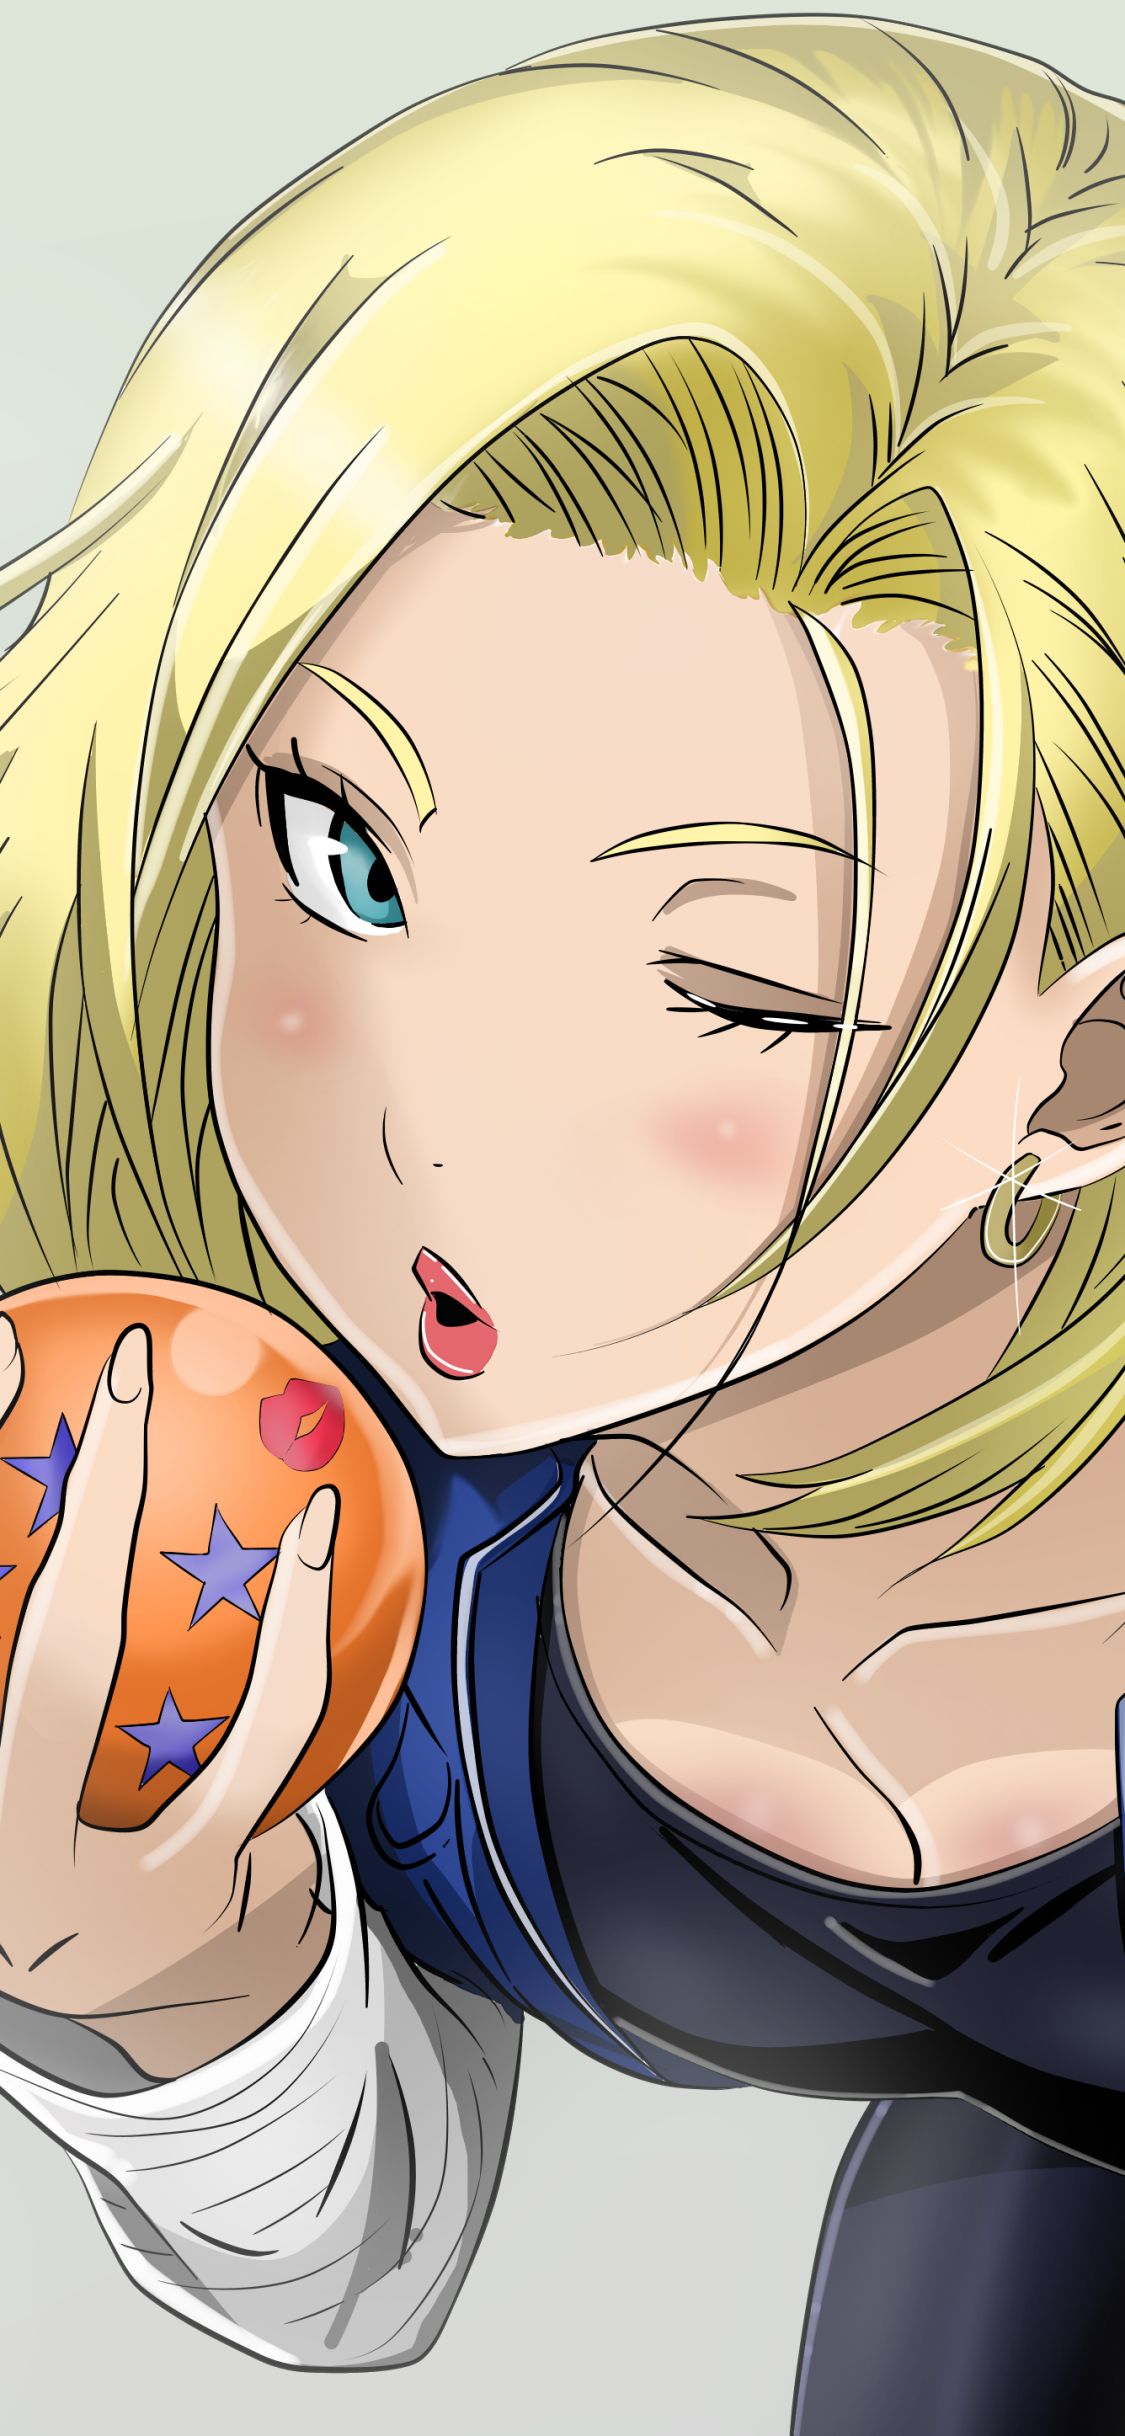 Handy-Wallpaper Dragon Ball, Animes, Dragonball Z, Android 18 (Dragonball) kostenlos herunterladen.